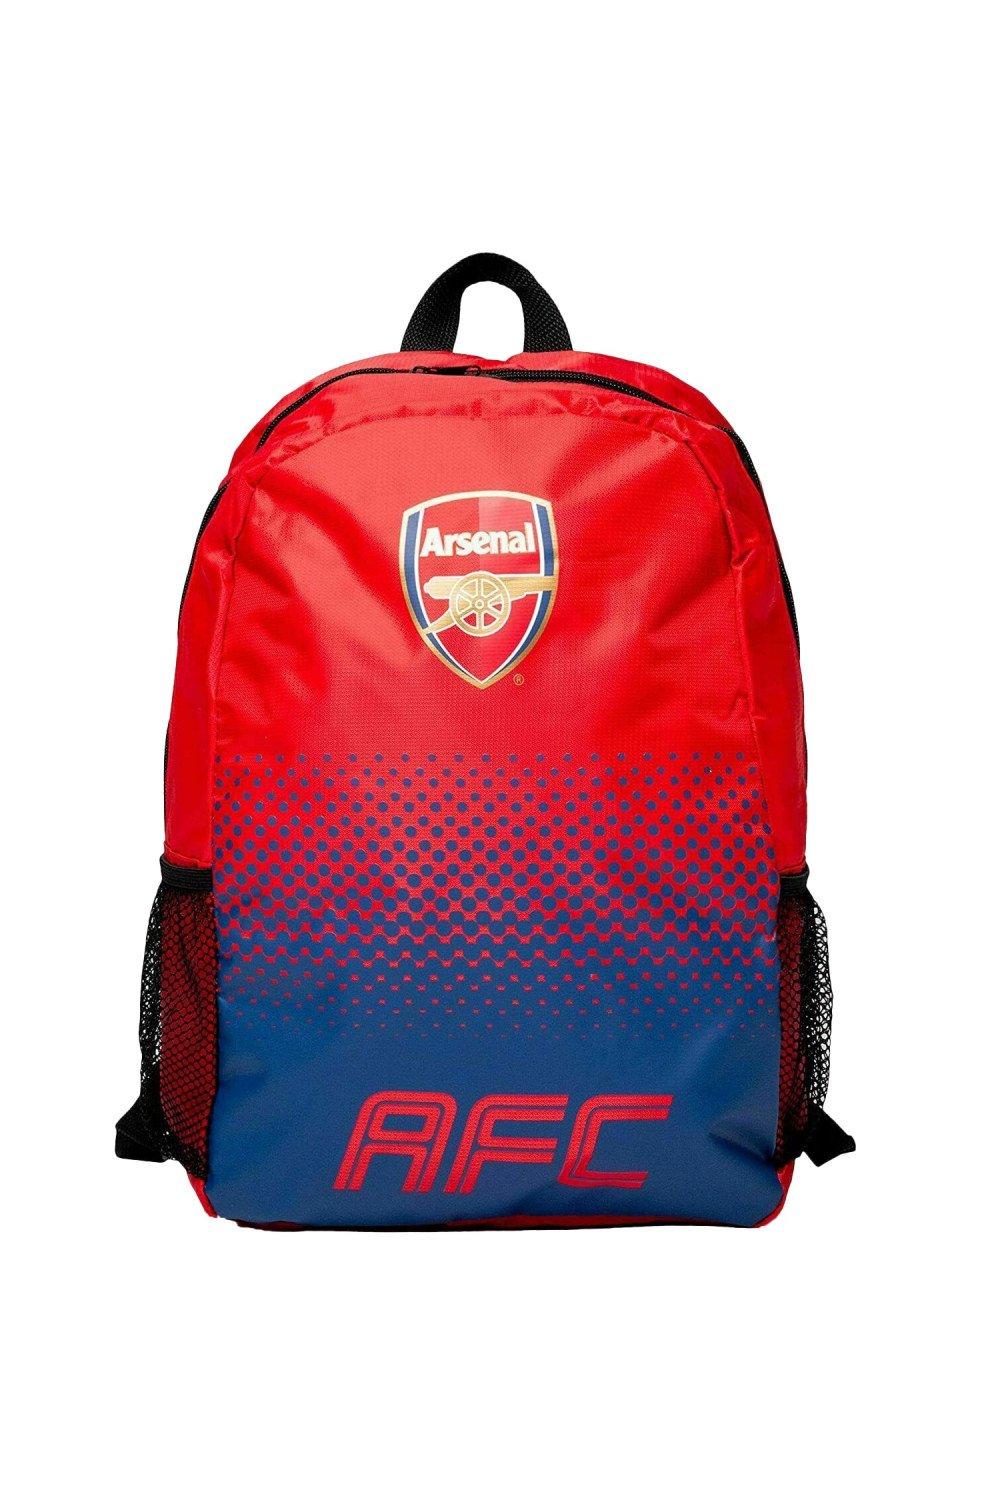 Рюкзак Fade Arsenal FC, красный